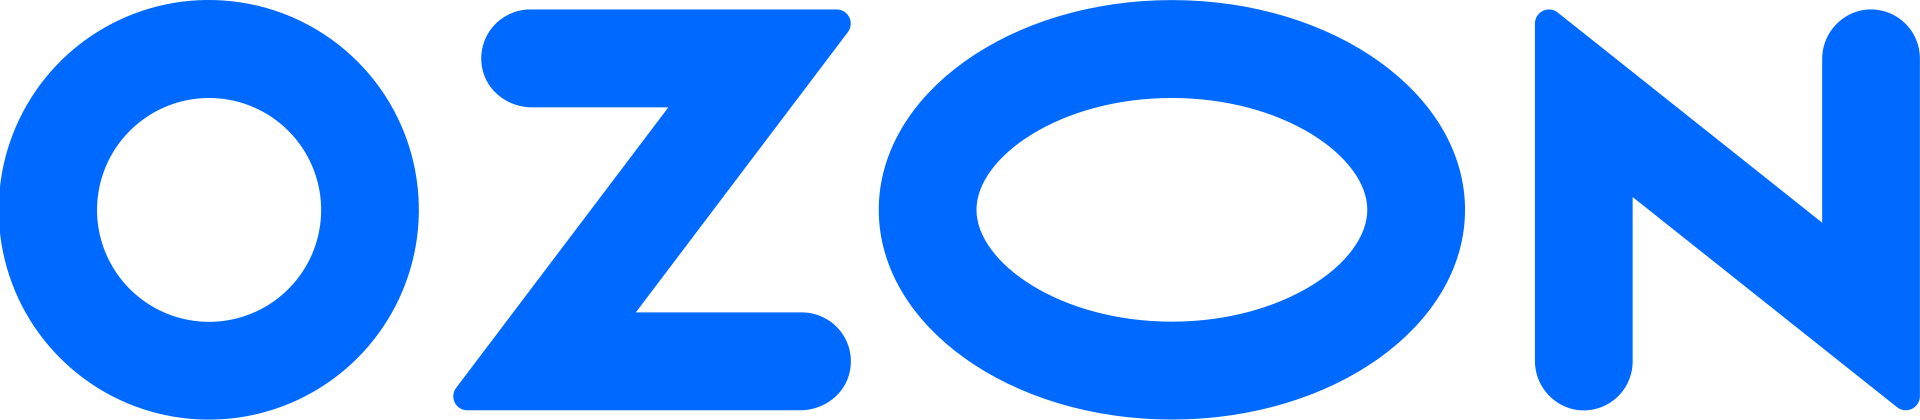 Логотип озон на черном фоне